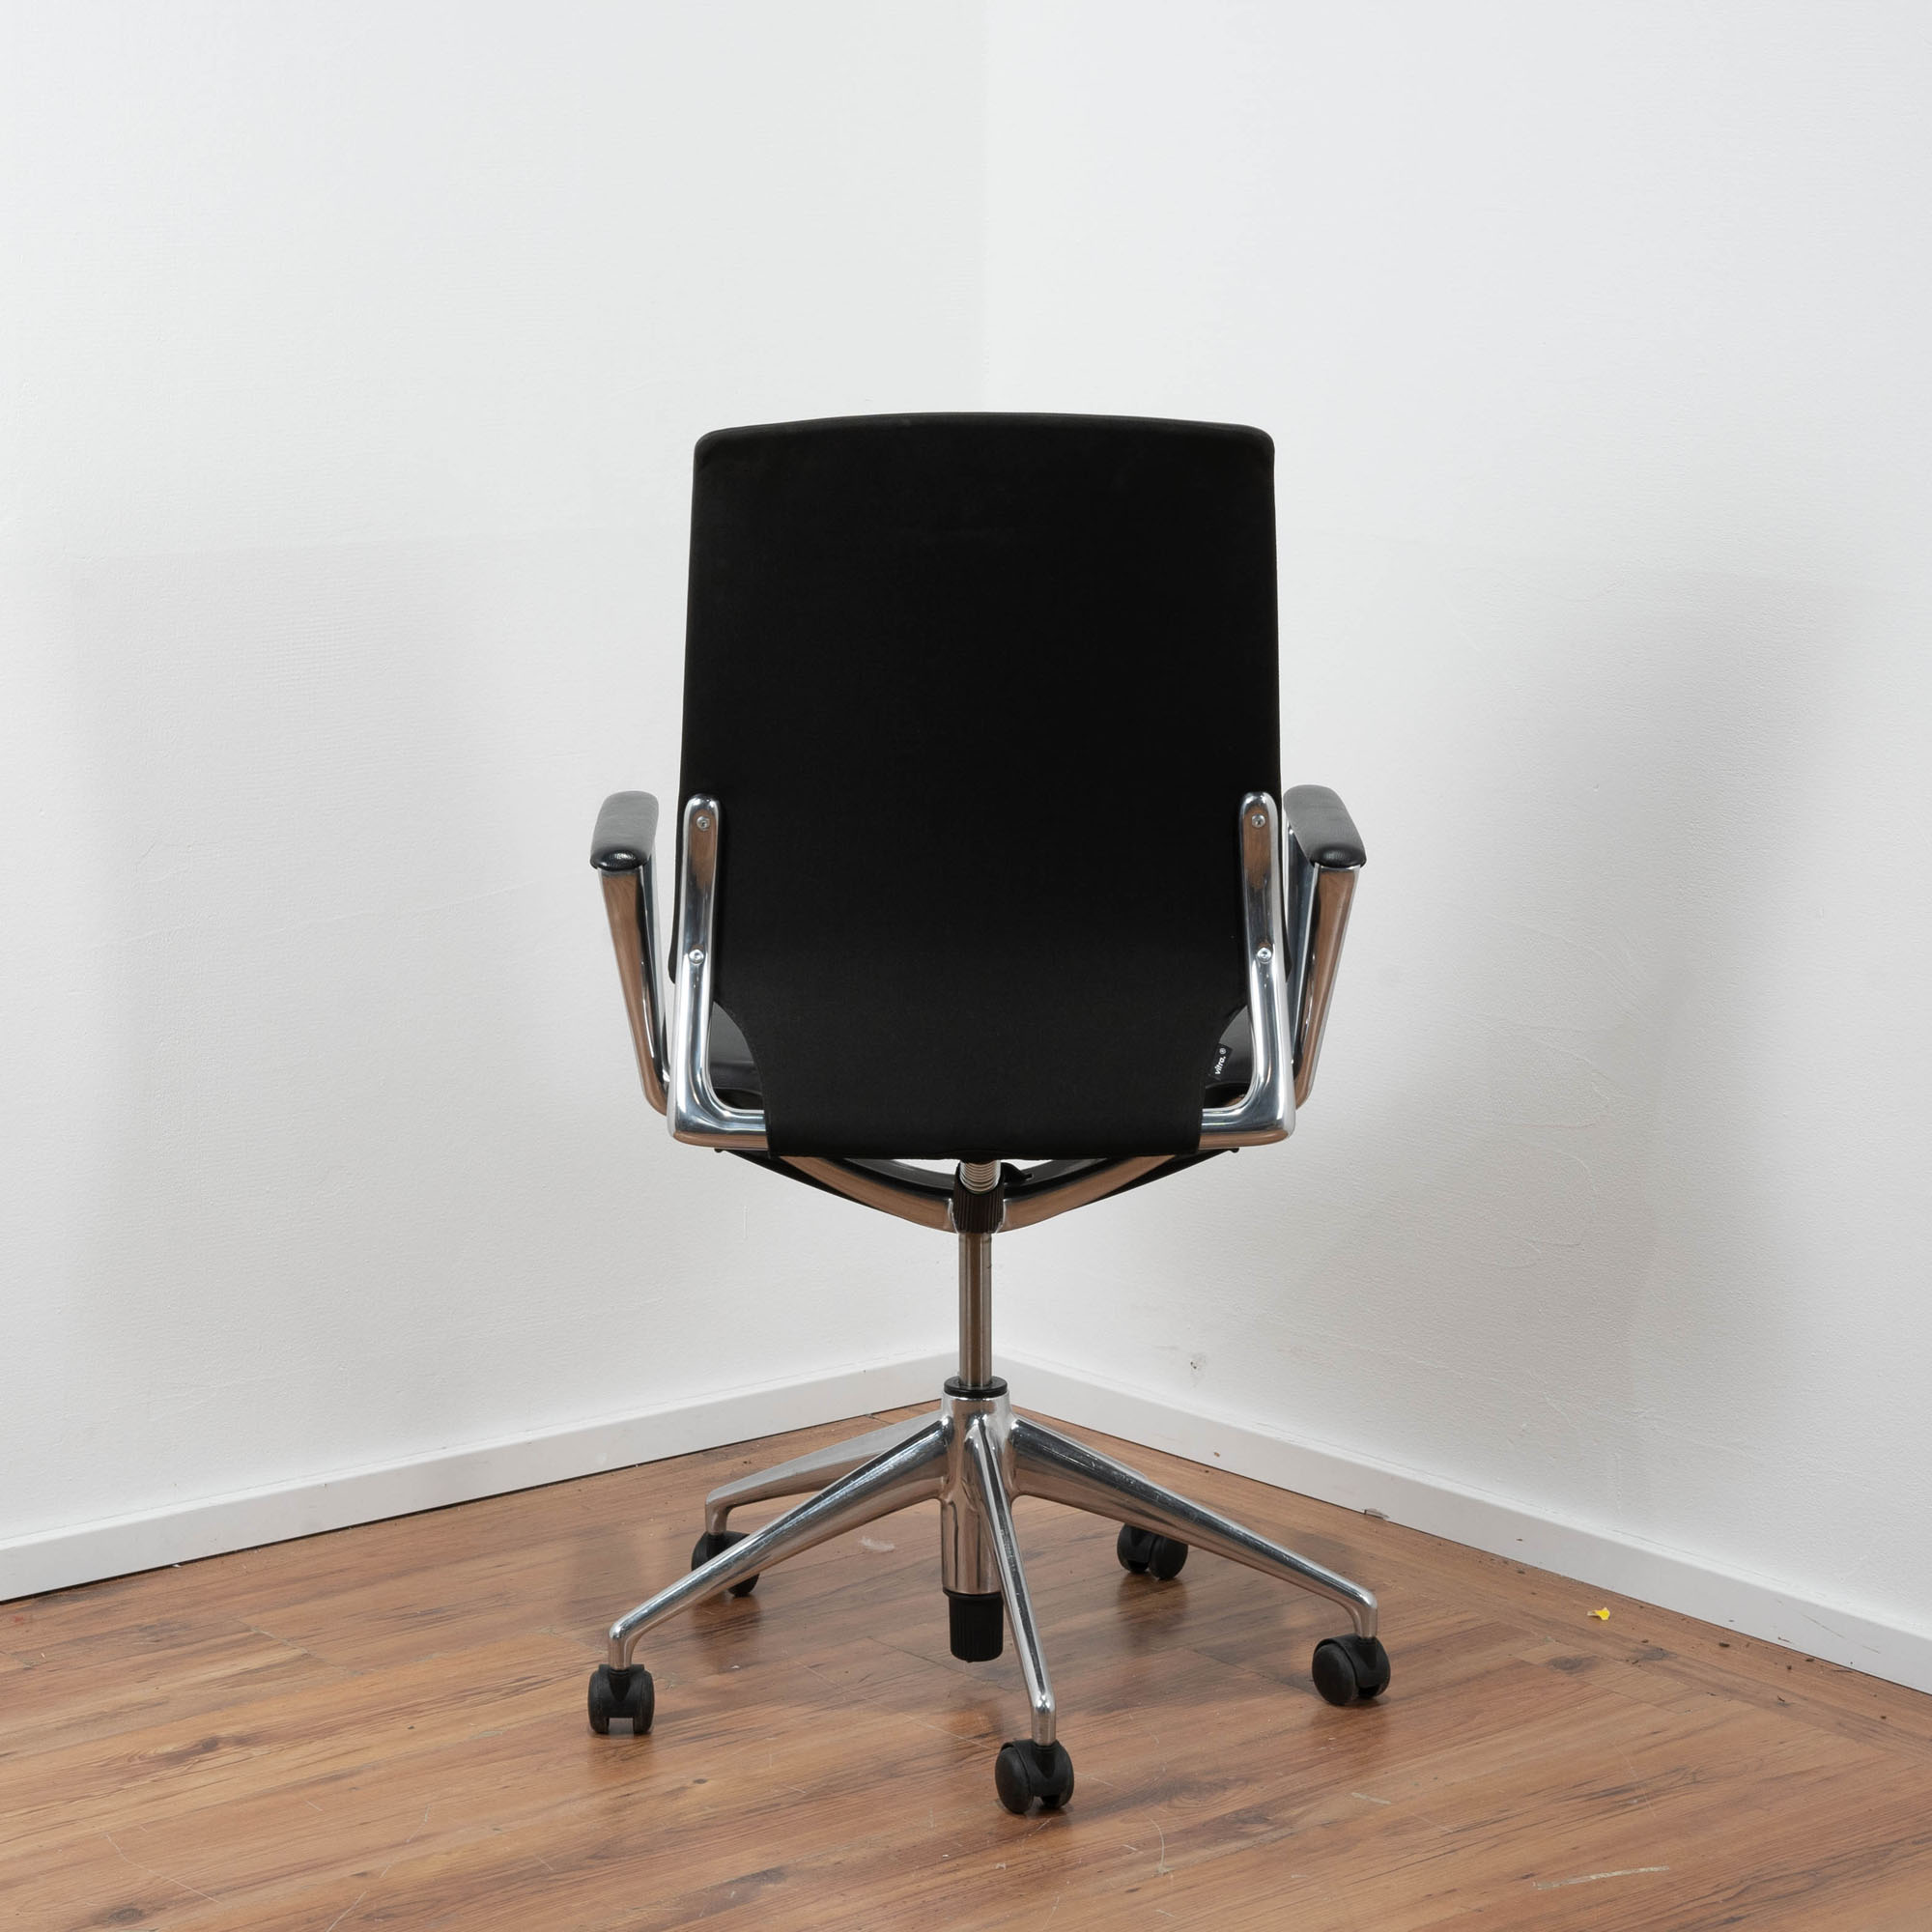 Vitra "Meda Chair" Bürodrehstuhl Leder schwarz - einstellbare Rückenlehne - Gestell Chrom - Armlehnen mit Lederauflagen 